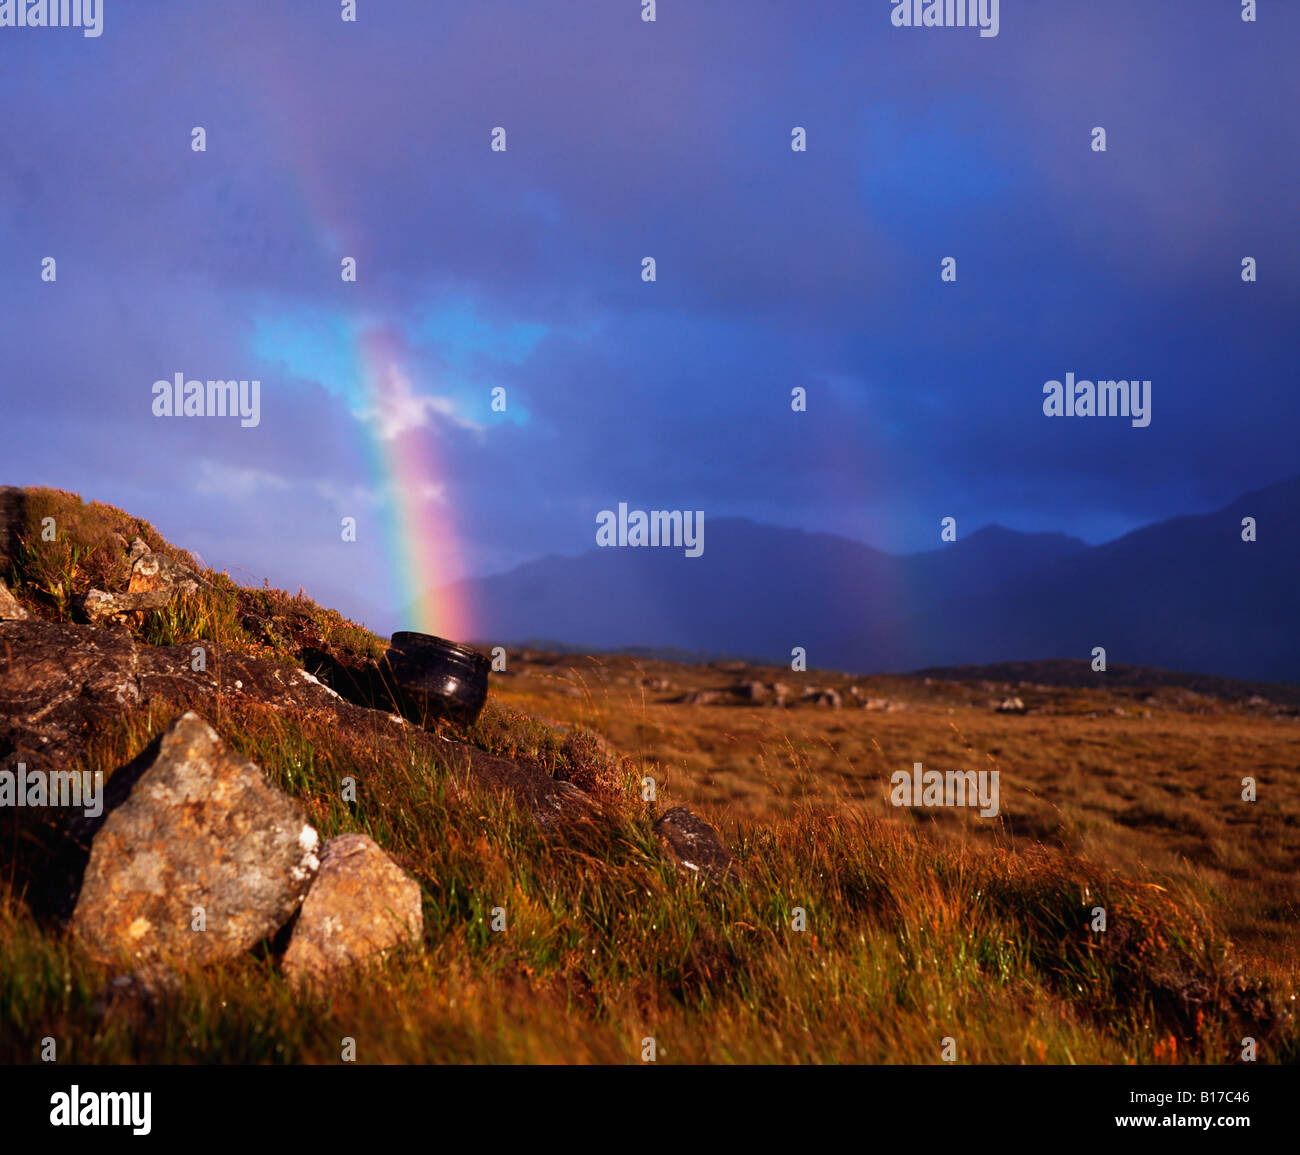 Olla de Oro al final del arco iris, Co Galway, Irlanda Foto de stock